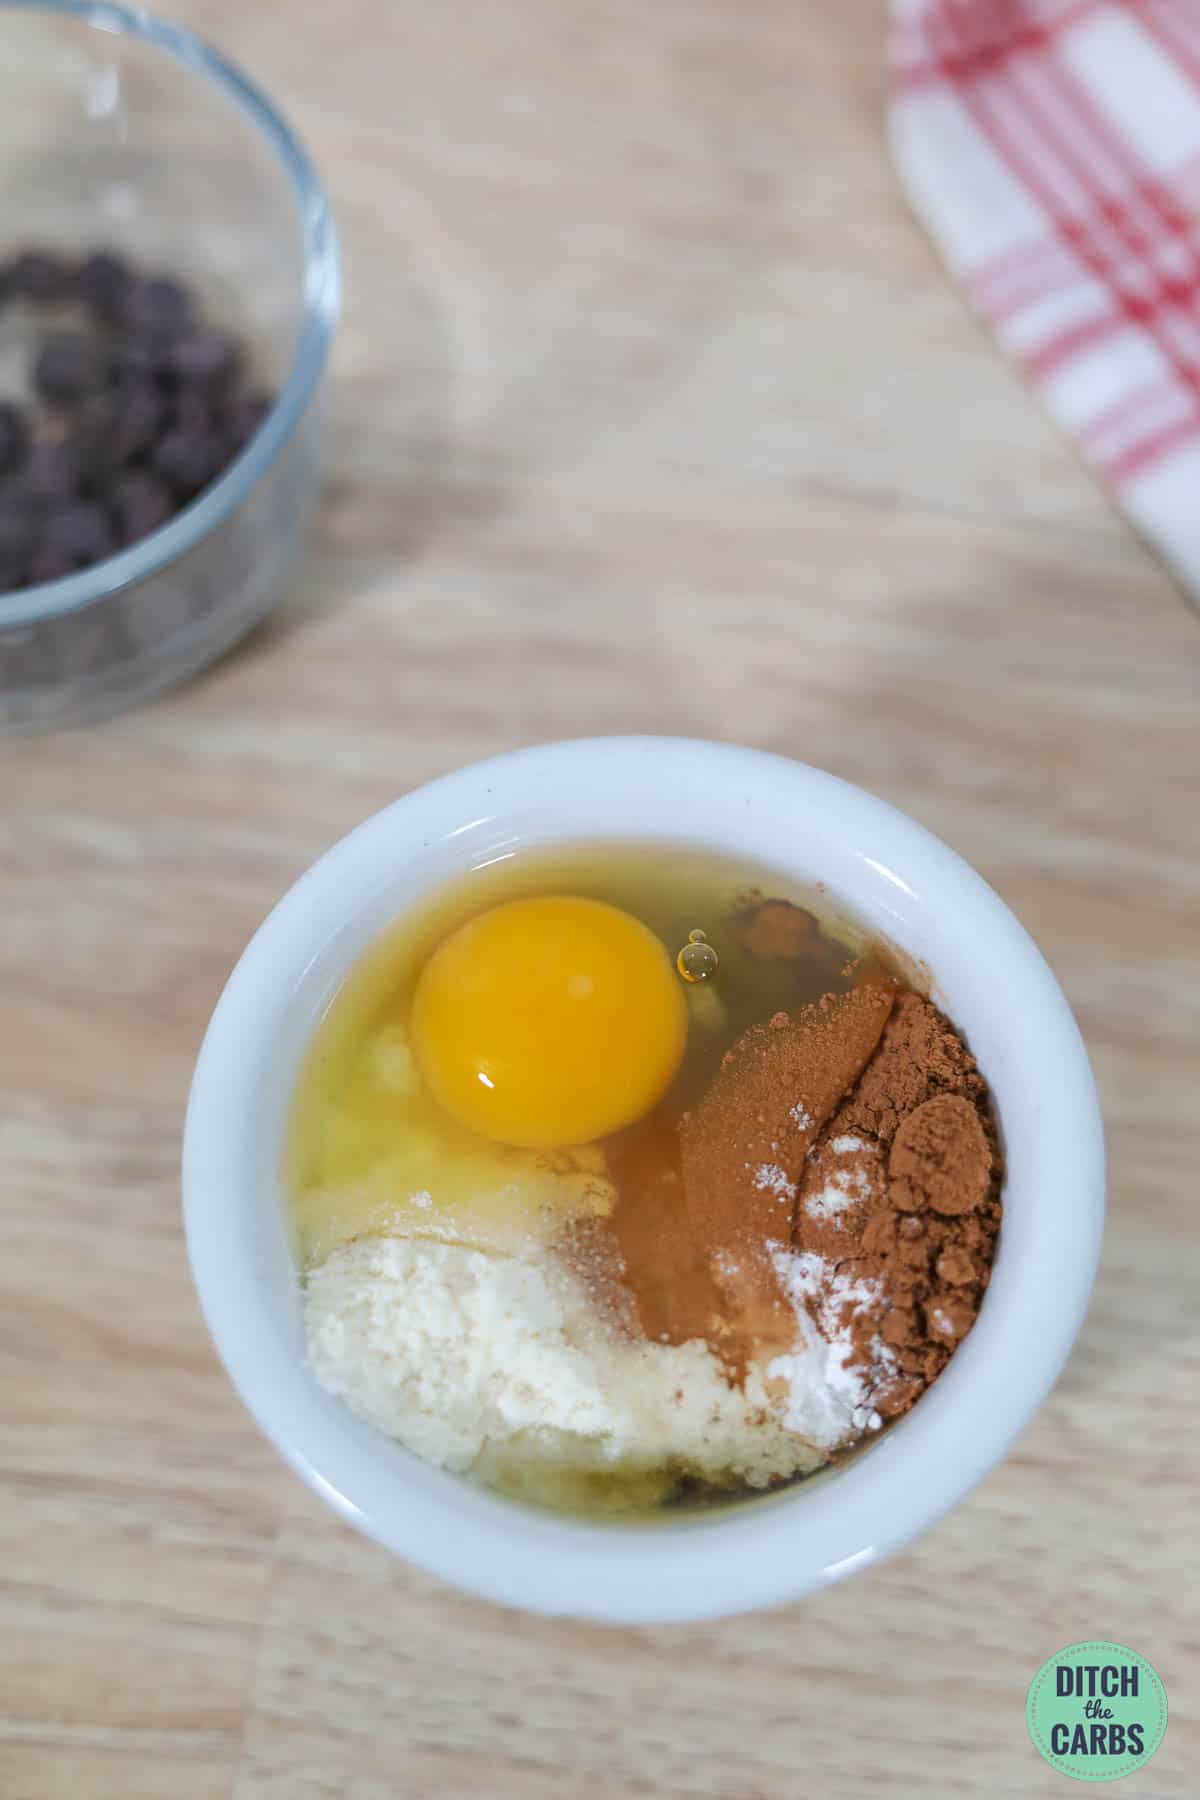 raw egg, sweetener, and cocoa in a white mug